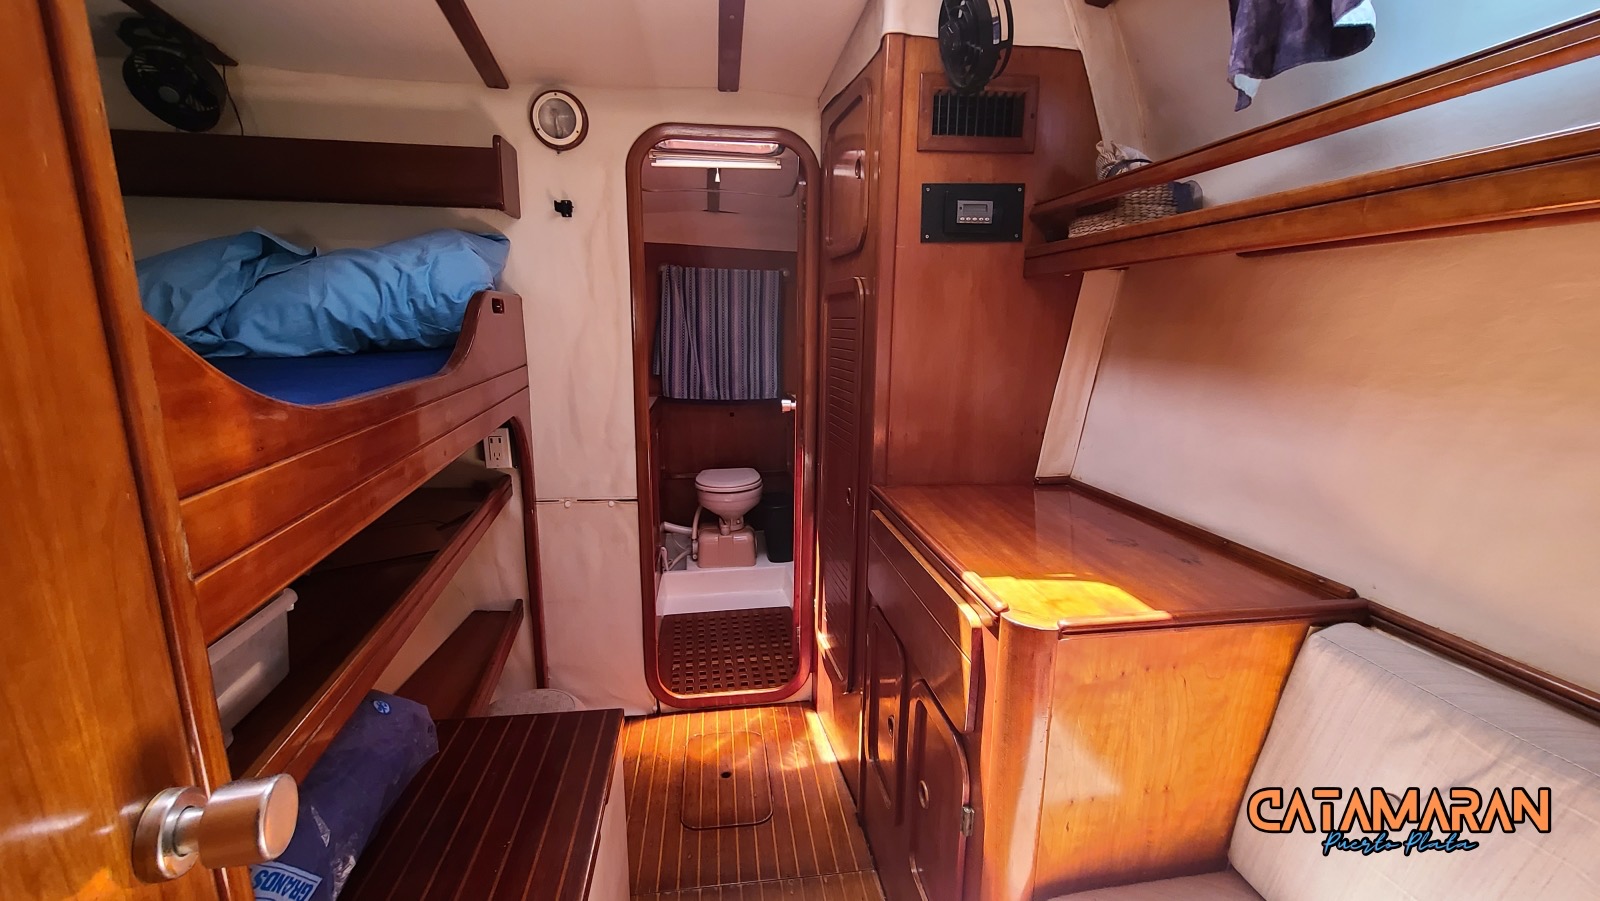 Catamaran berth with bunk beds